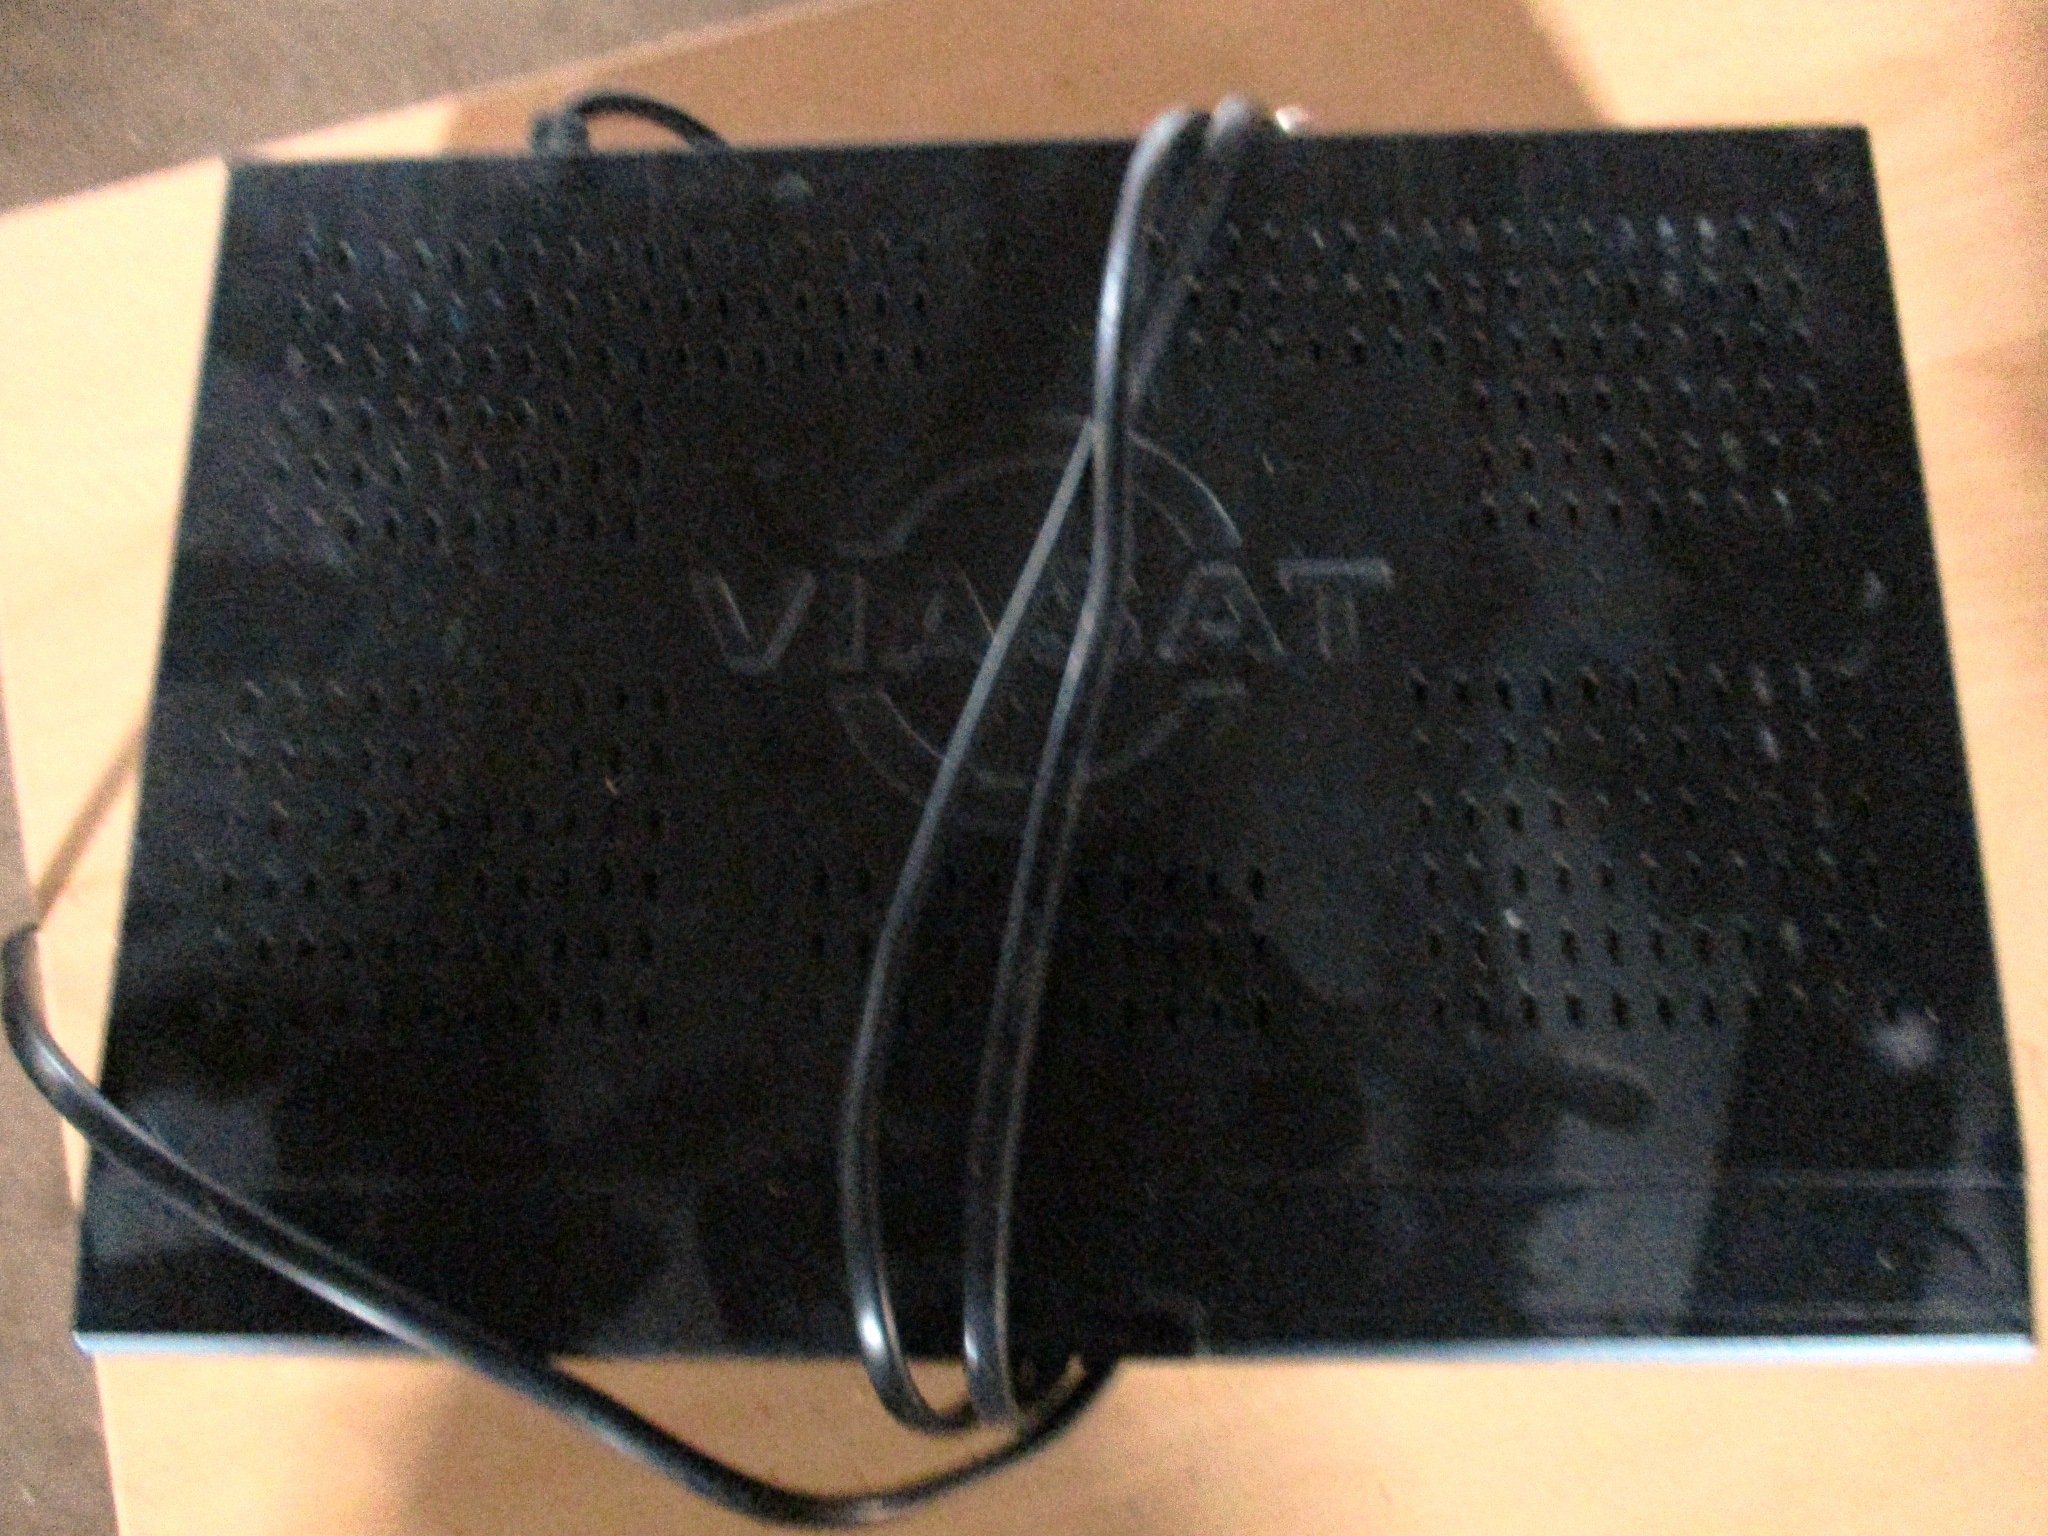 Тюнер марки Viasat, с/н 1190333890678116, чорного кольору, б/к, робочий стан не перевірявся